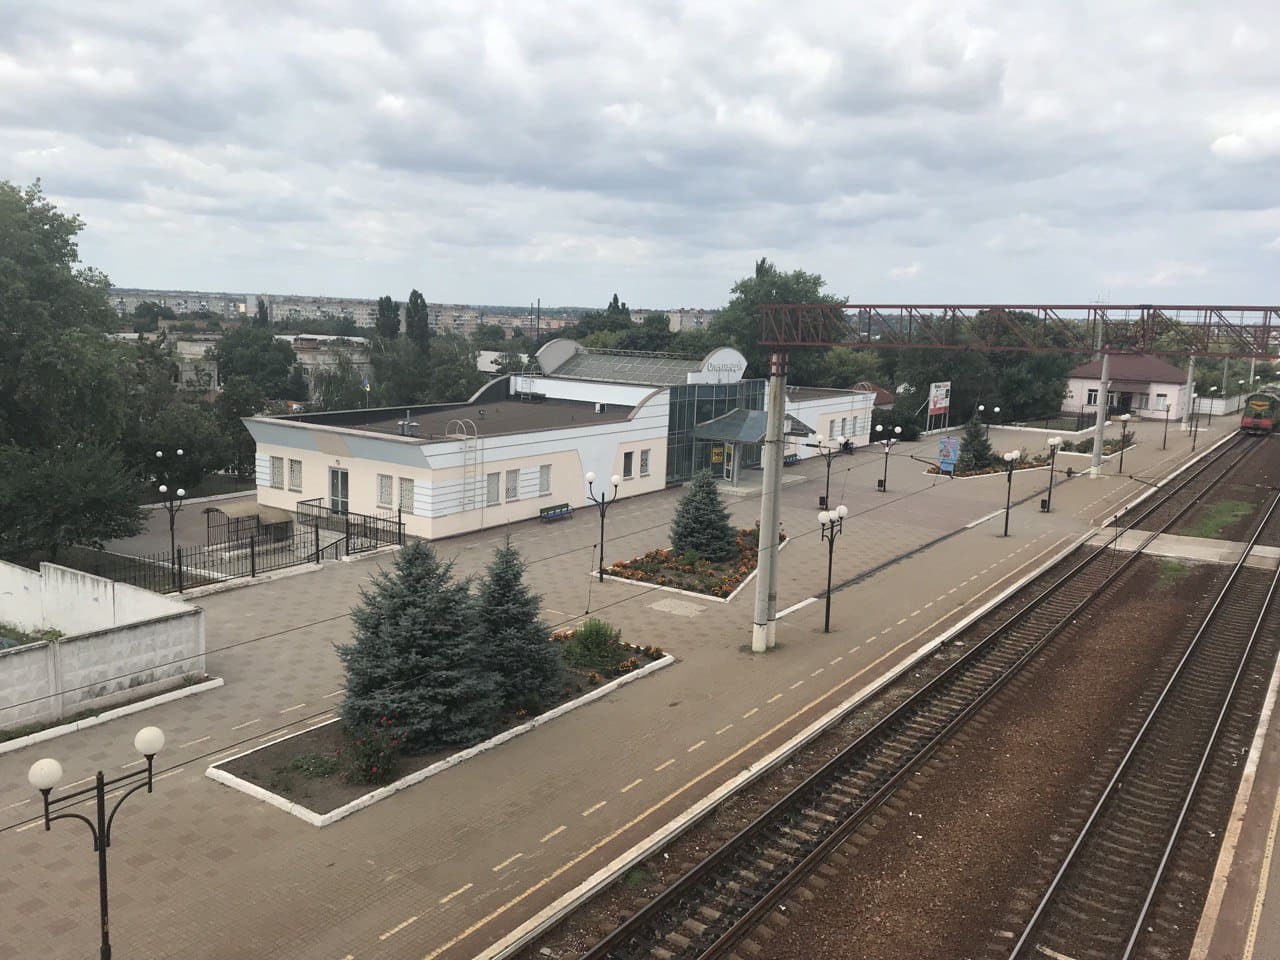 Через Александрию начал курсировать поезд Краматорск - Одесса. Маршрут и стоимость билетов